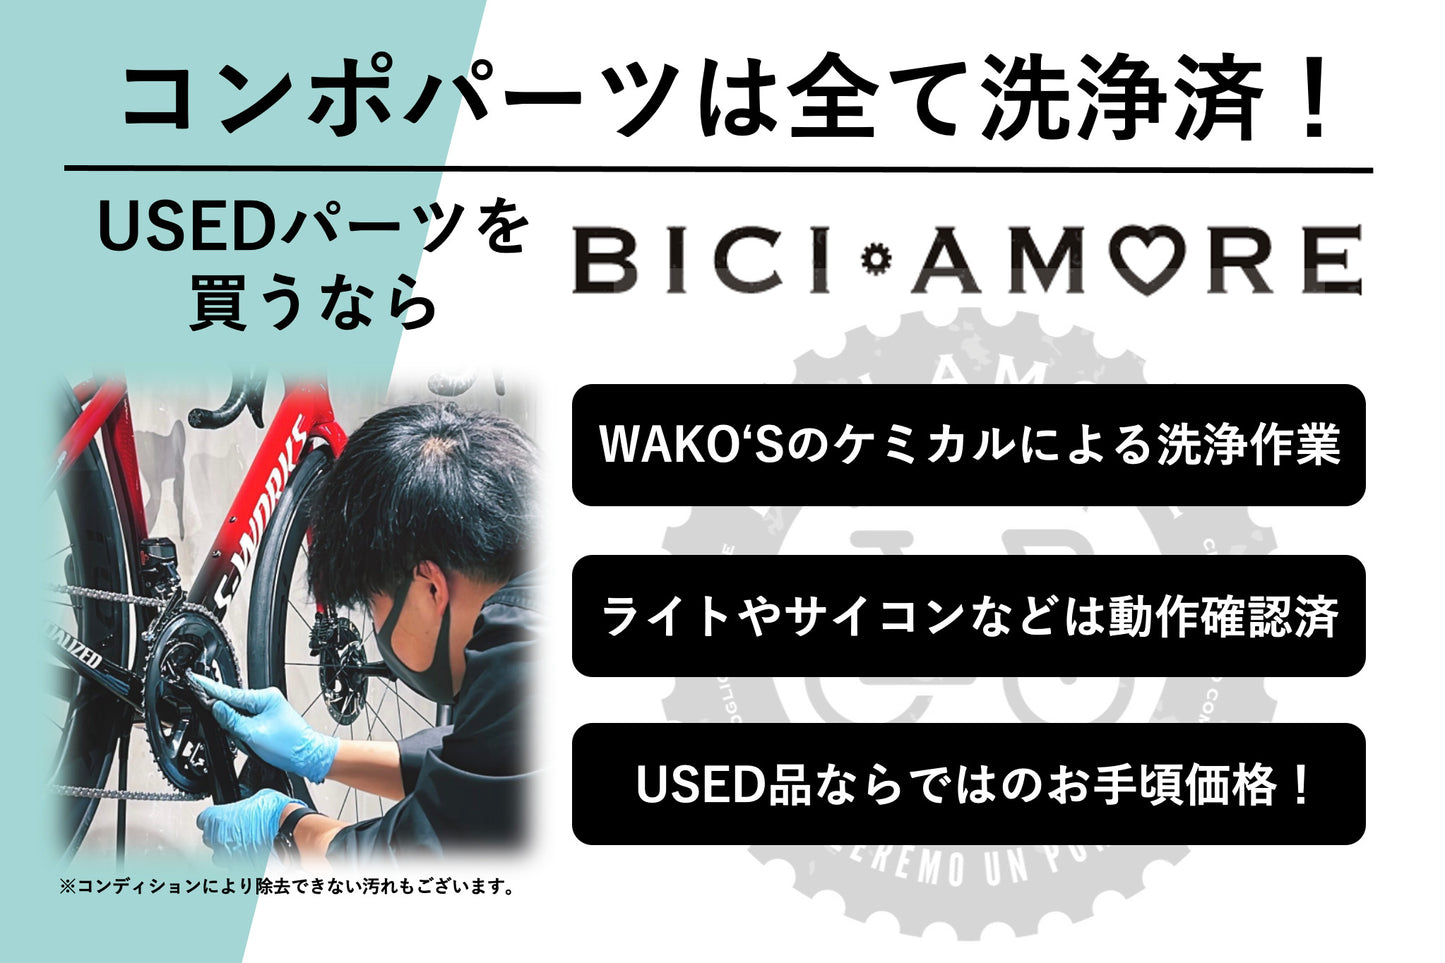 HJ872 シマノ SHIMANO FC-MT610 クランクセット 170mm ナローワイド 32T 1x12s